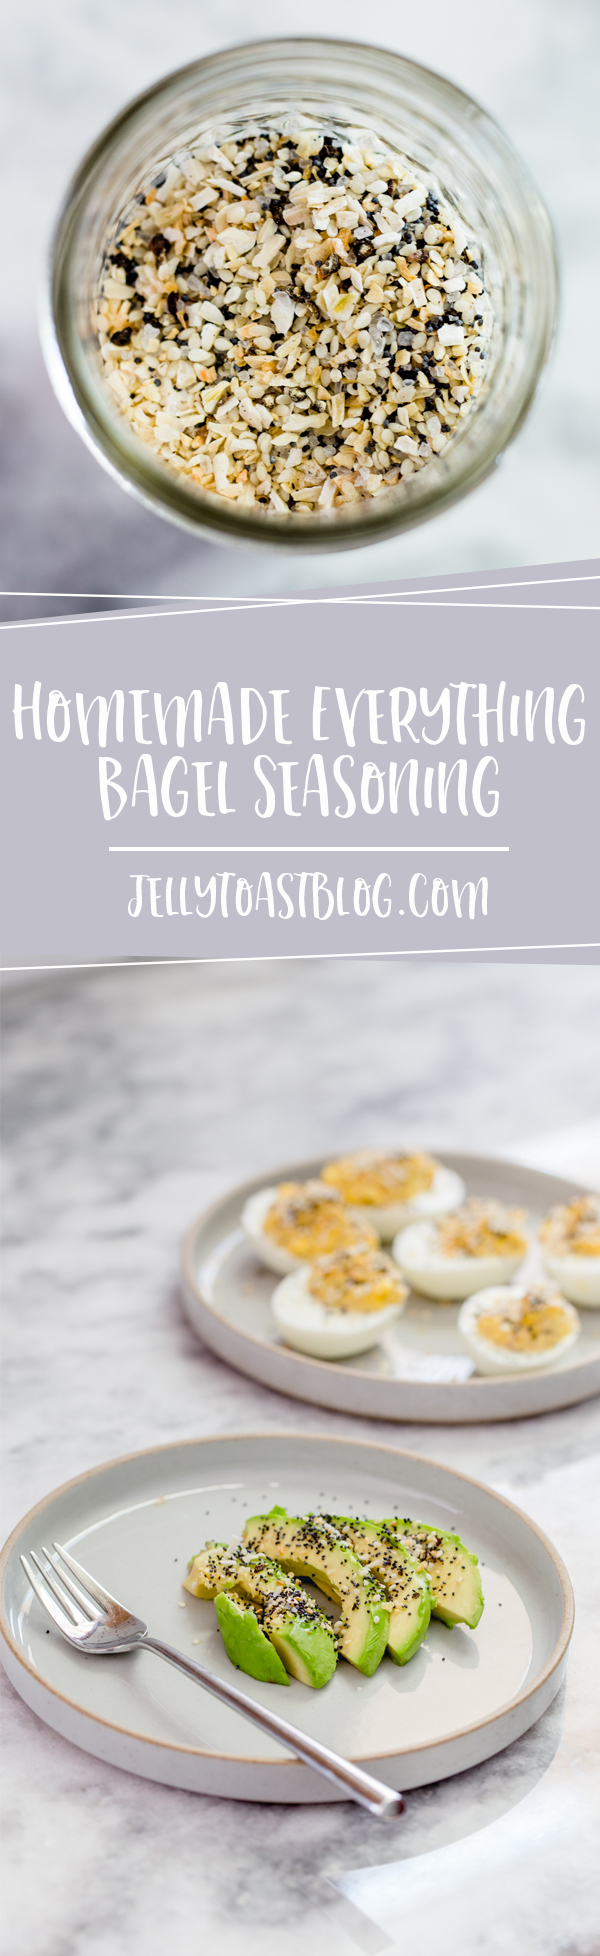 Everything Bagel Seasoning Recipe